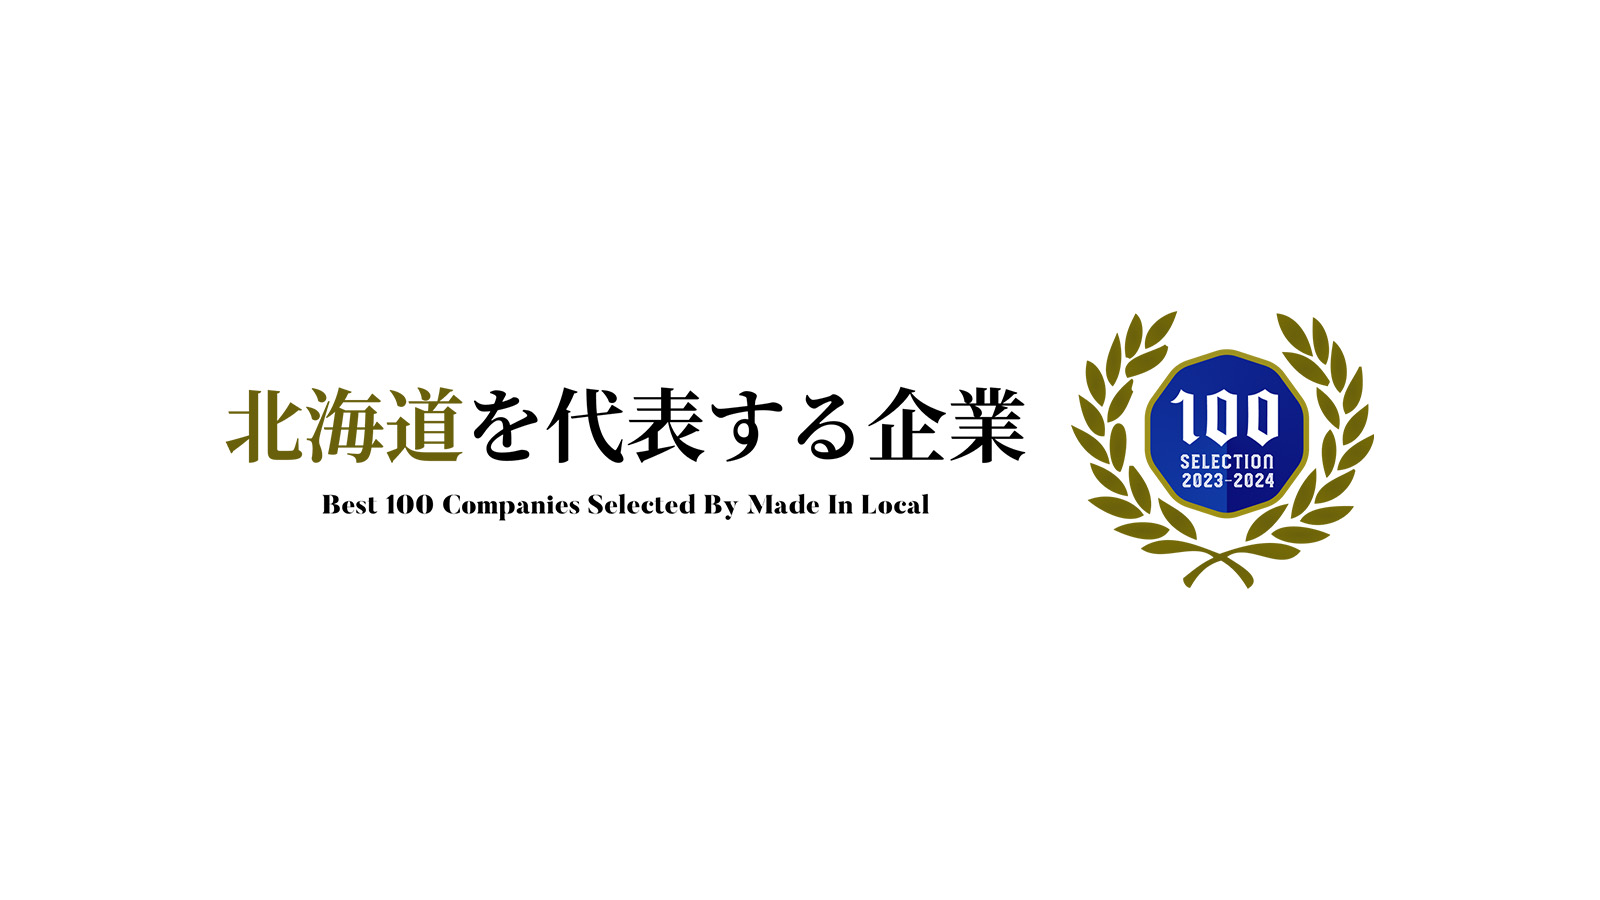 「北海道を代表する企業100選」に選出・掲載されました